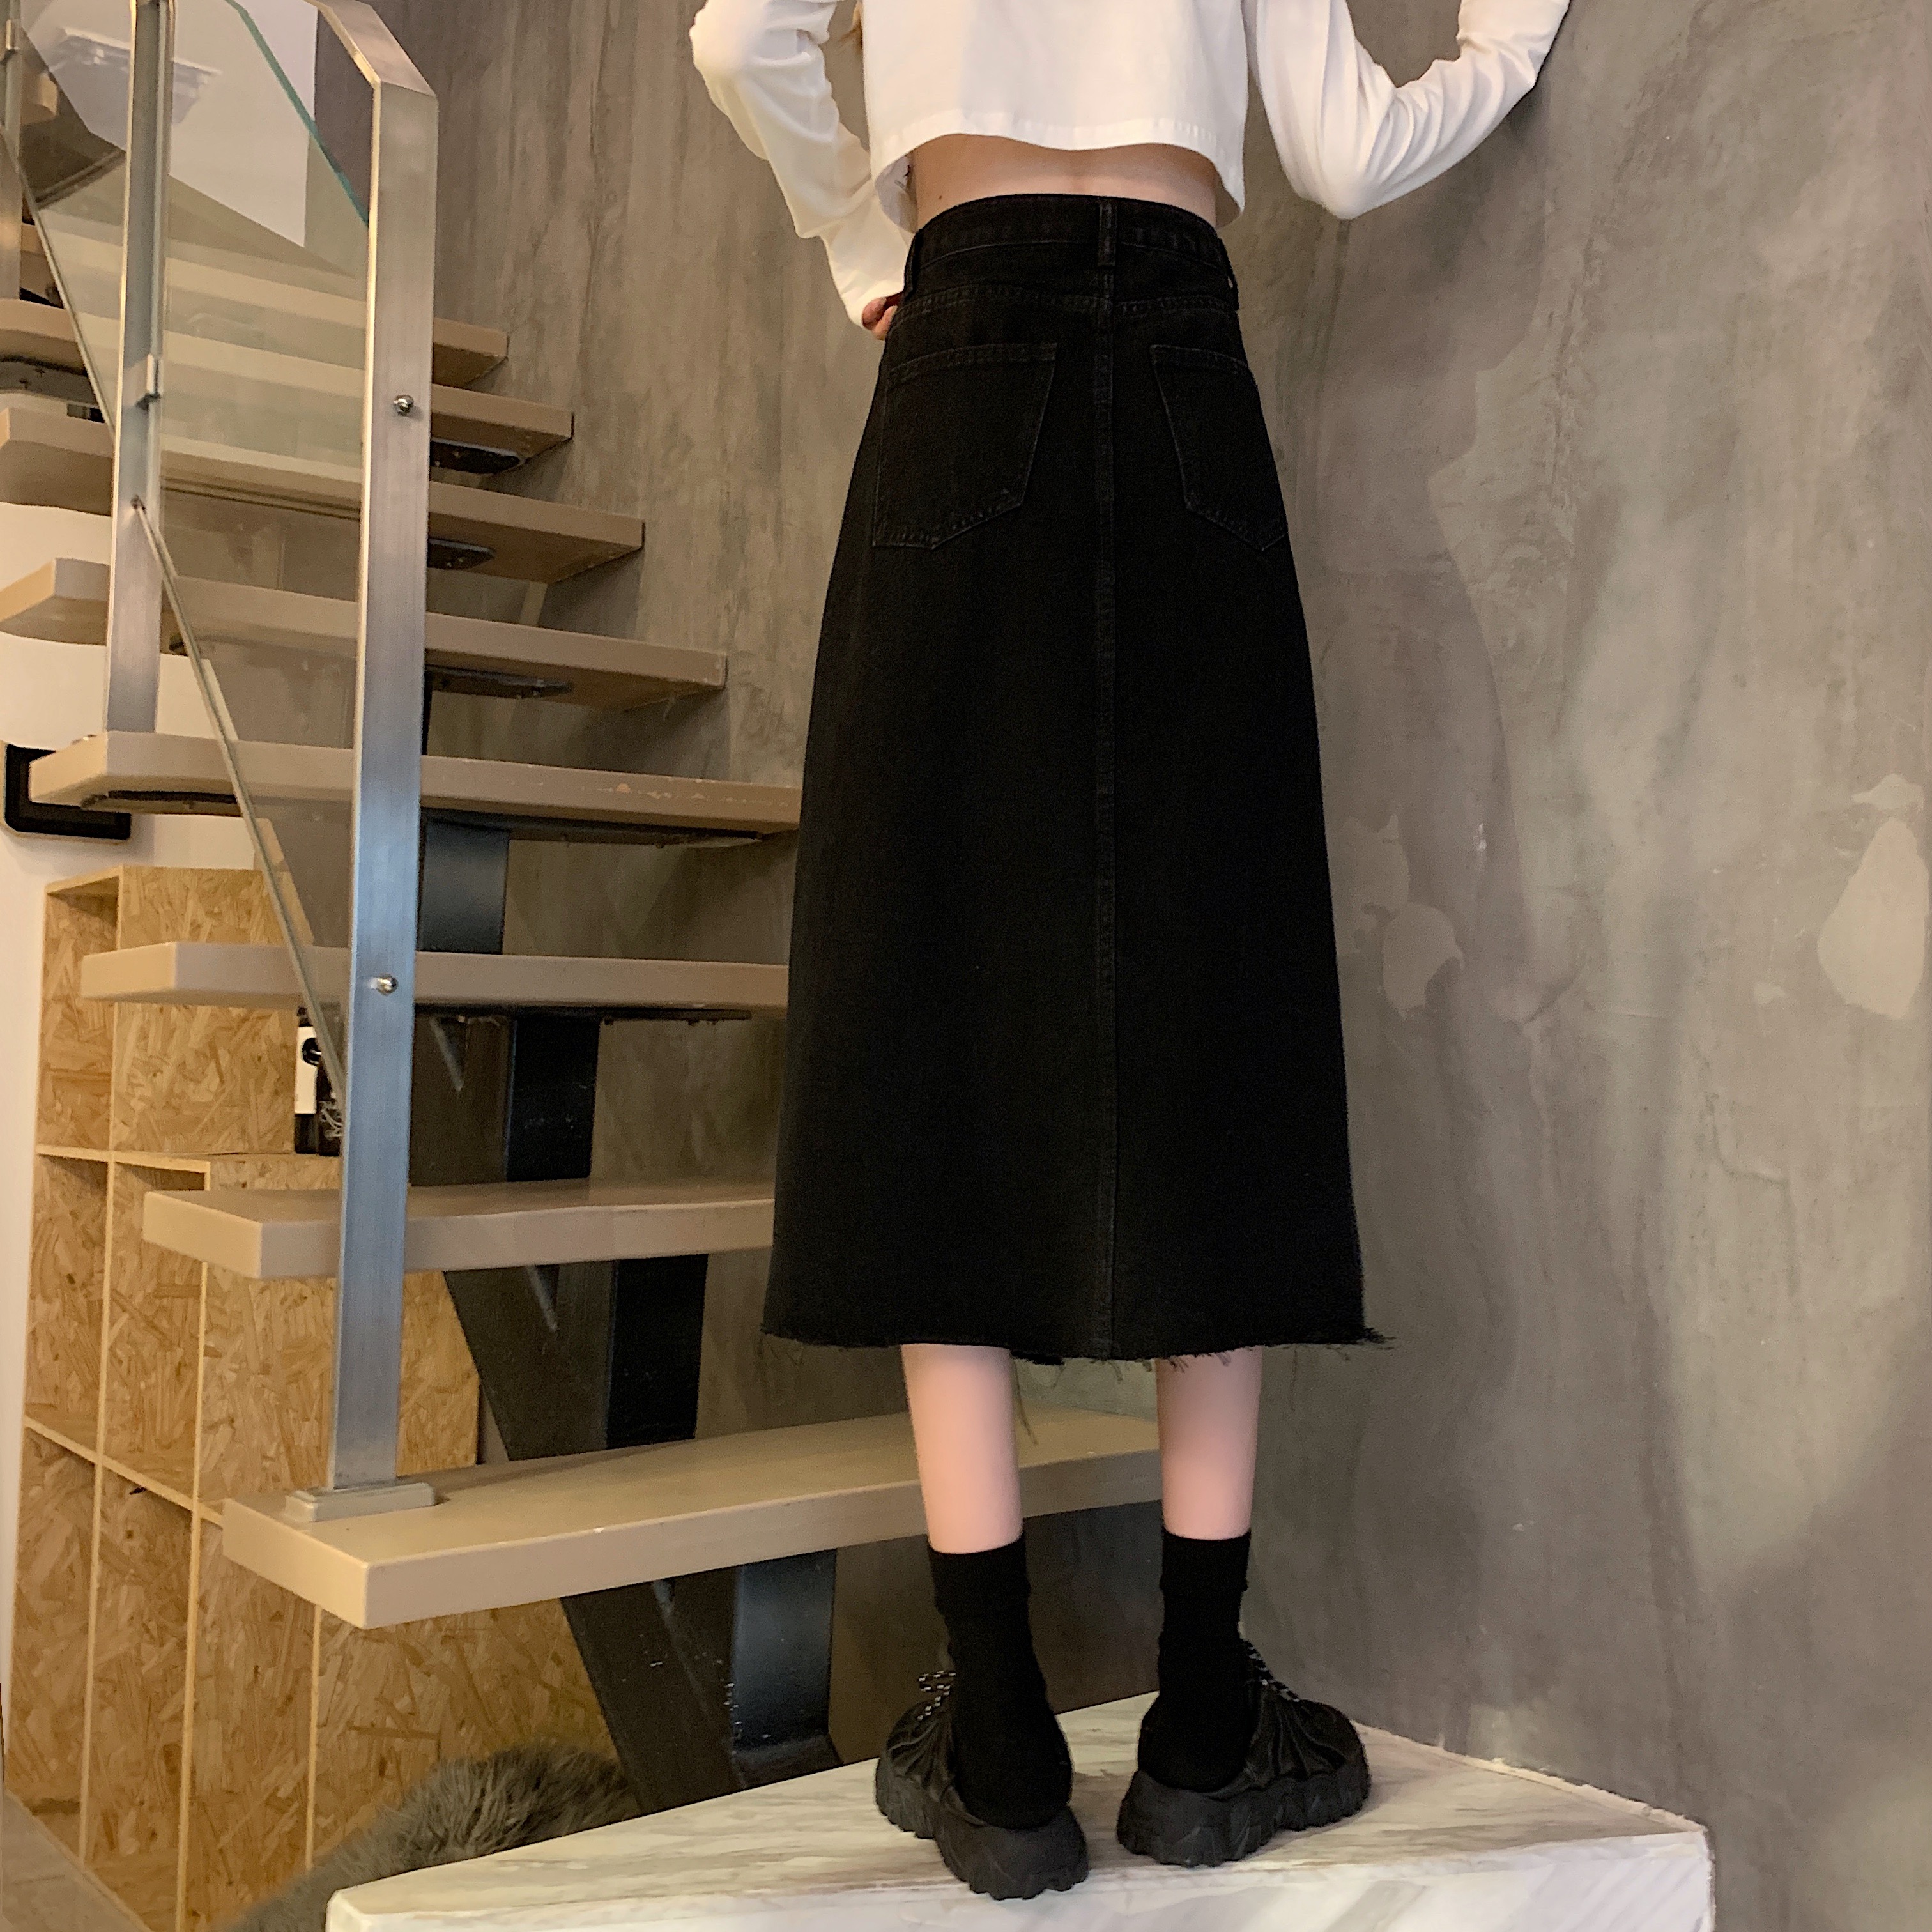 Chân váy bút chì nữ dáng dài lưng cao 2021, Chân váy chữ A chất jeans xẻ tà trước phối cú thời trang công sở hàn quốc